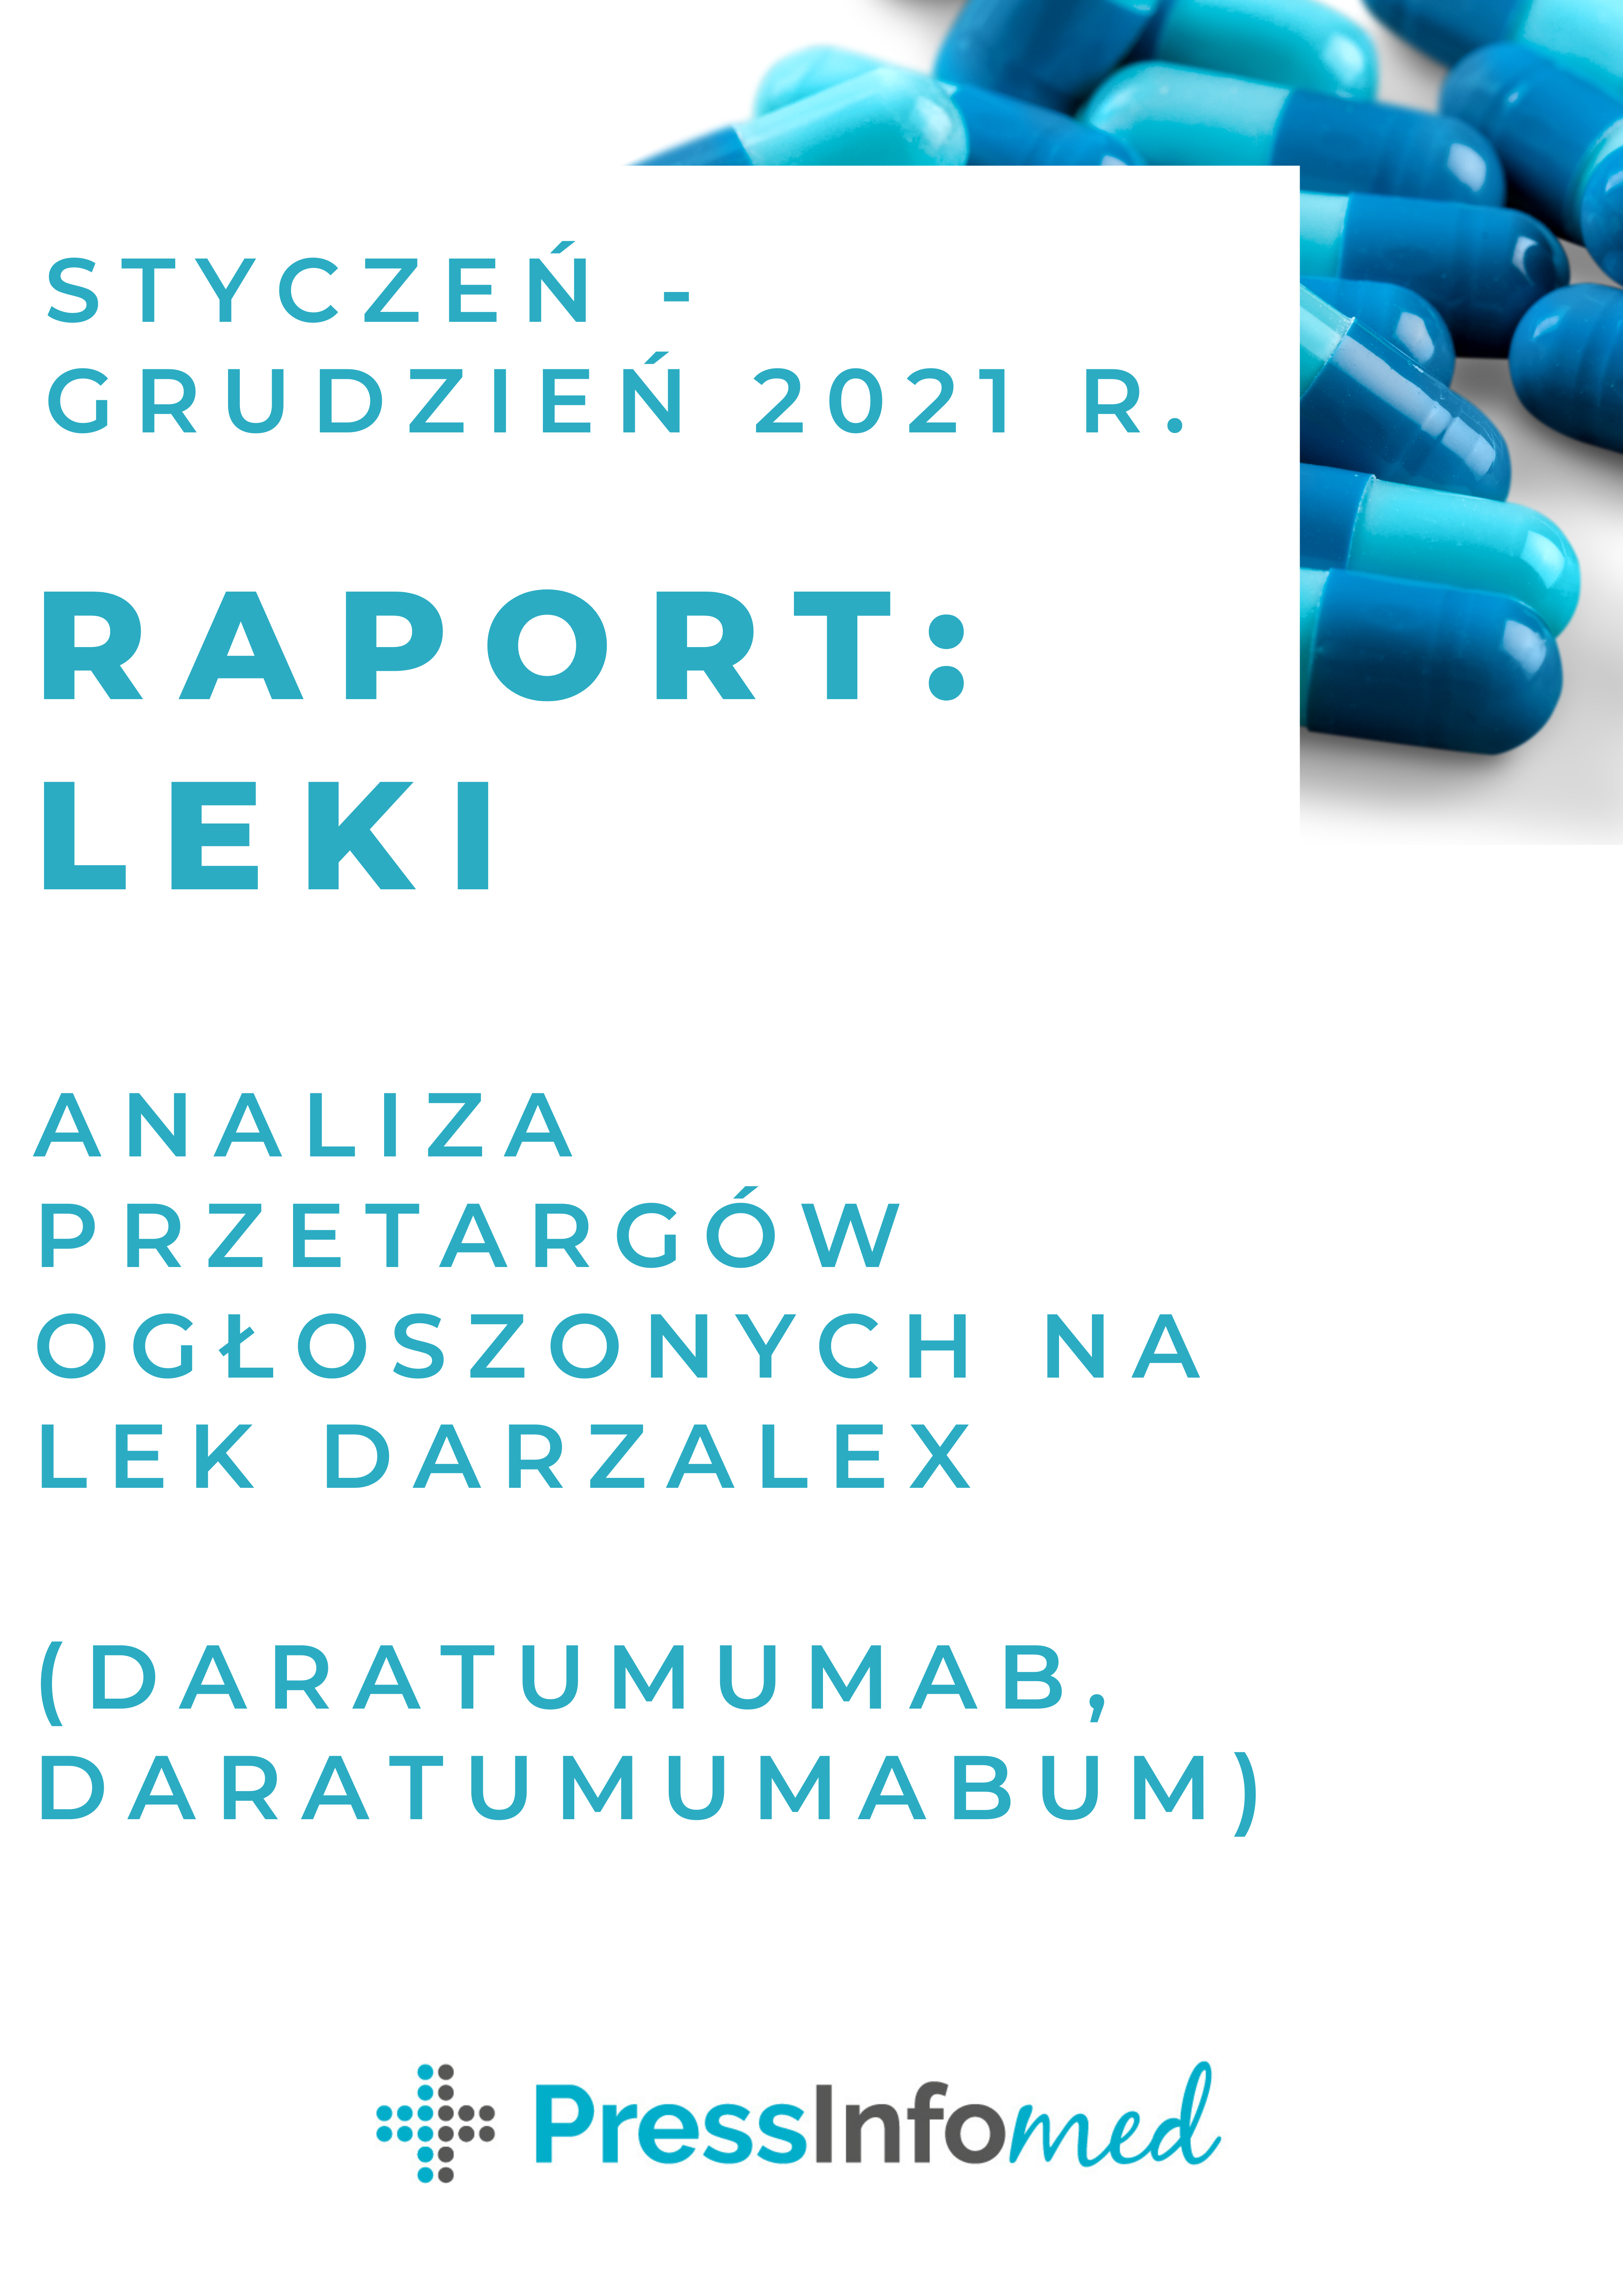 Raport z analizy przetargów na lek Darzalex (daratumumab, daratumumabum) ogłoszonych w 2021 r.